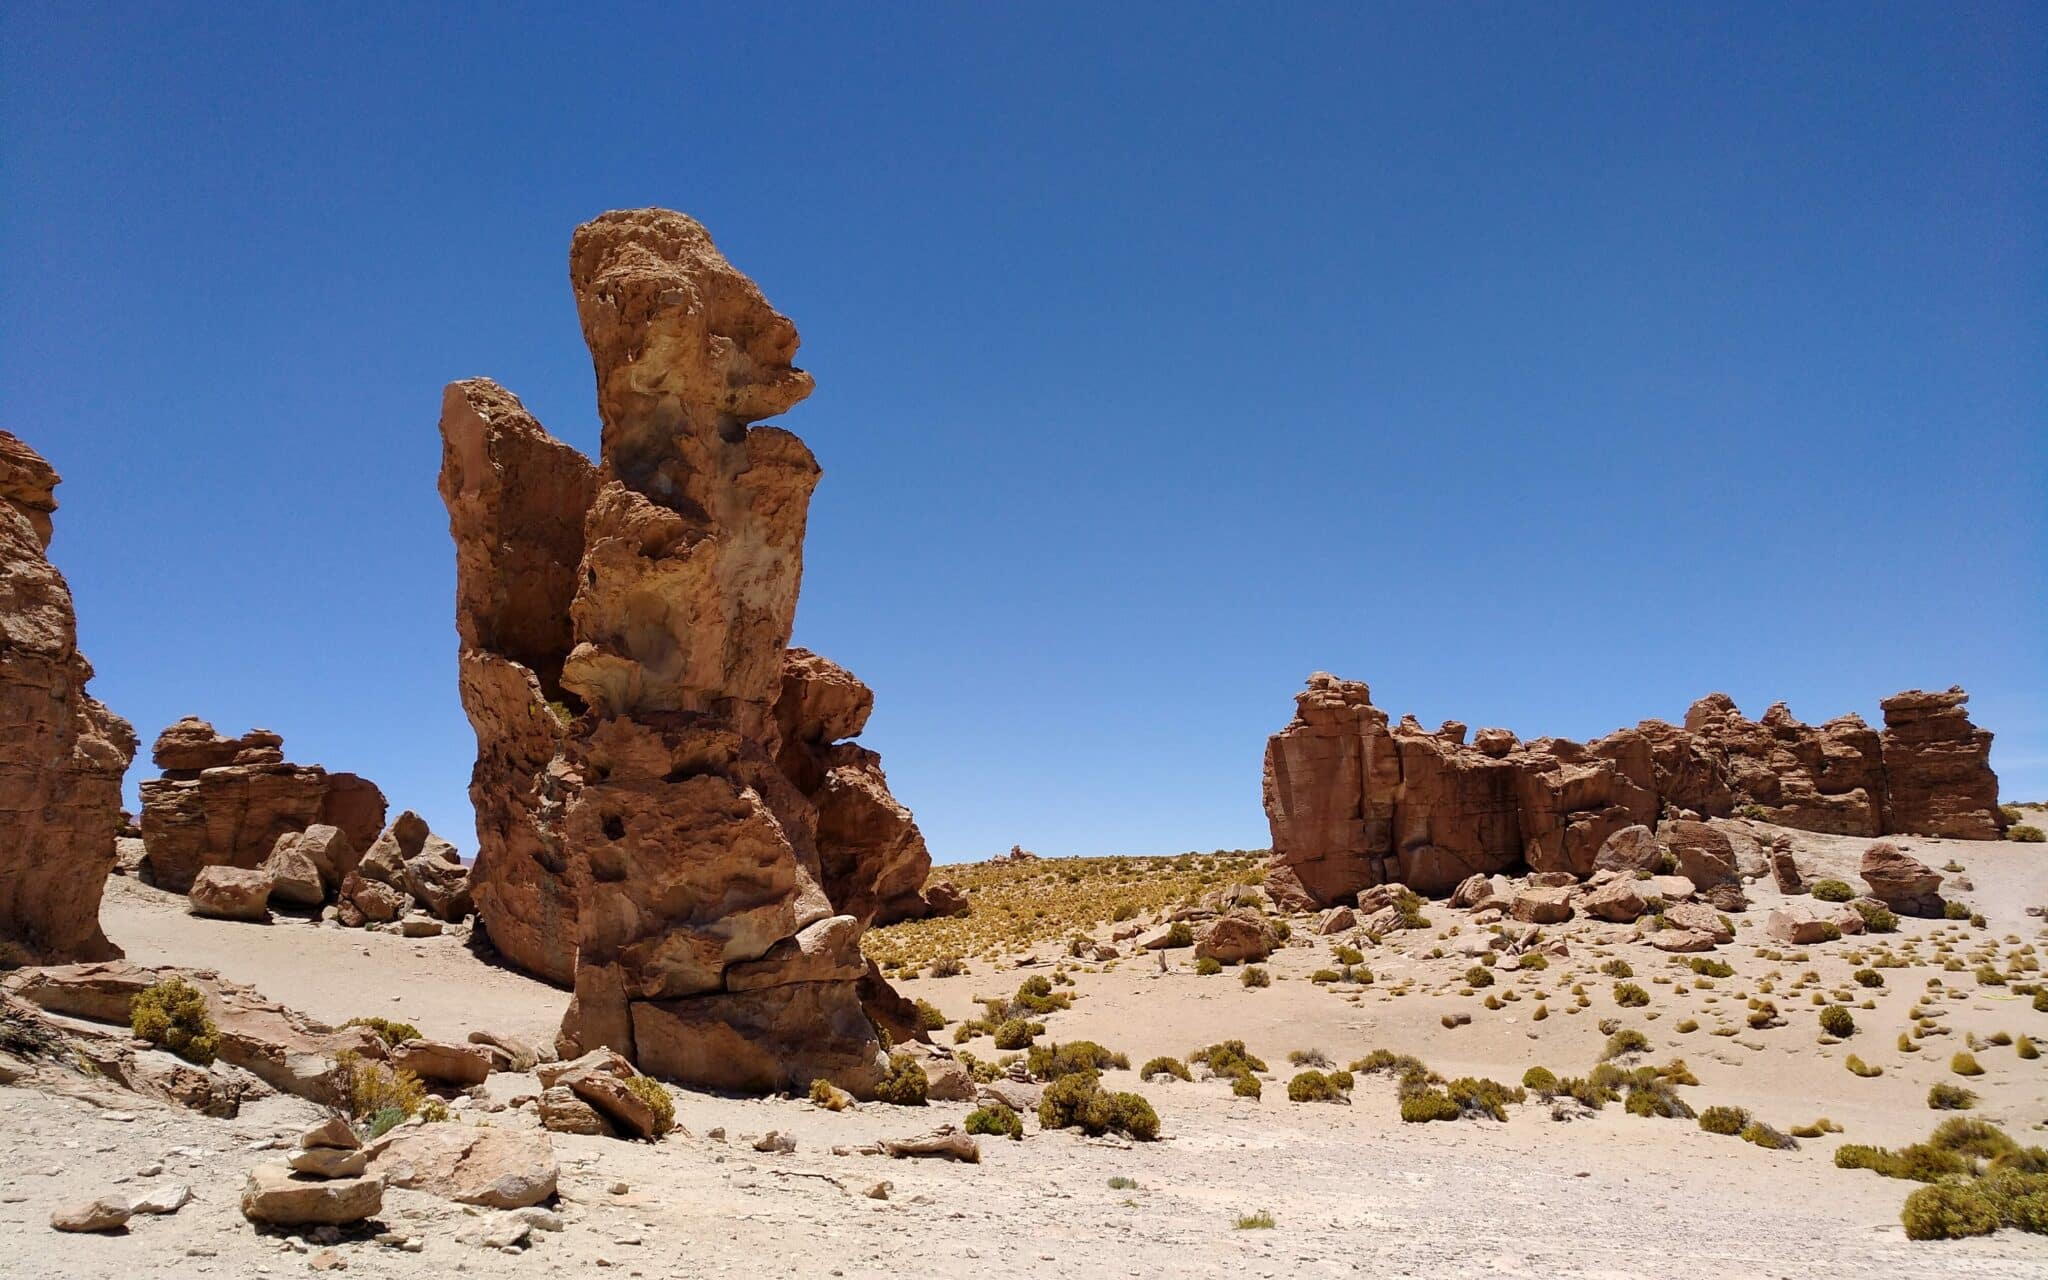 Formazioni rocciose alte un metro che hanno una forma particolare.